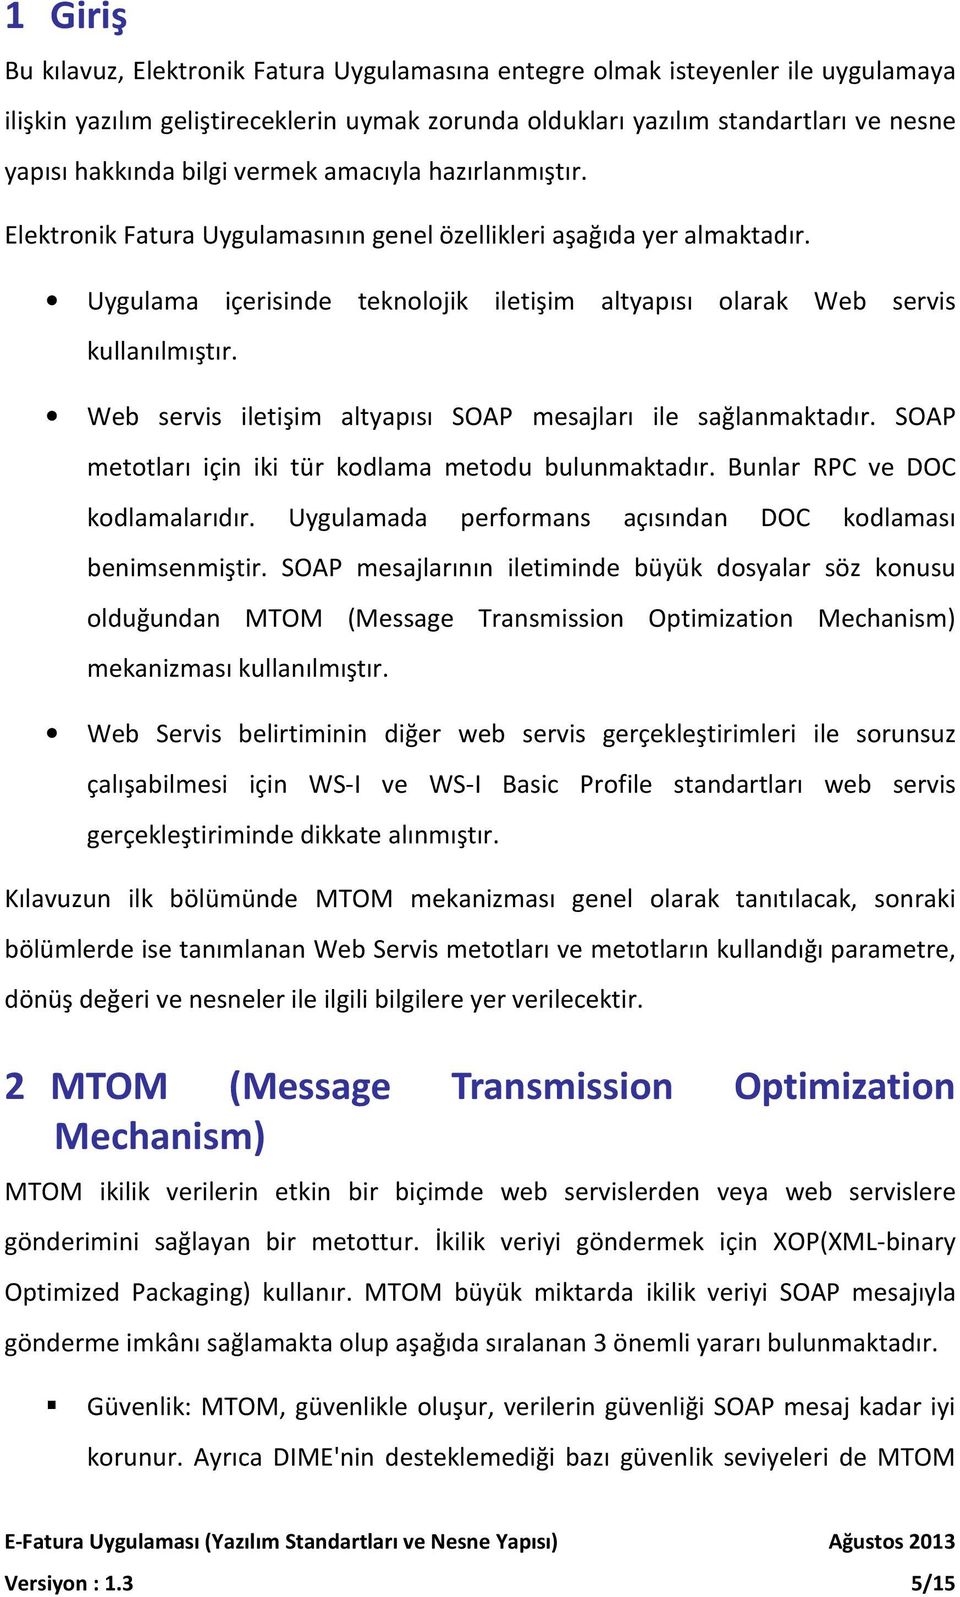 Web servis iletişim altyapısı SOAP mesajları ile sağlanmaktadır. SOAP metotları için iki tür kodlama metodu bulunmaktadır. Bunlar RPC ve DOC kodlamalarıdır.